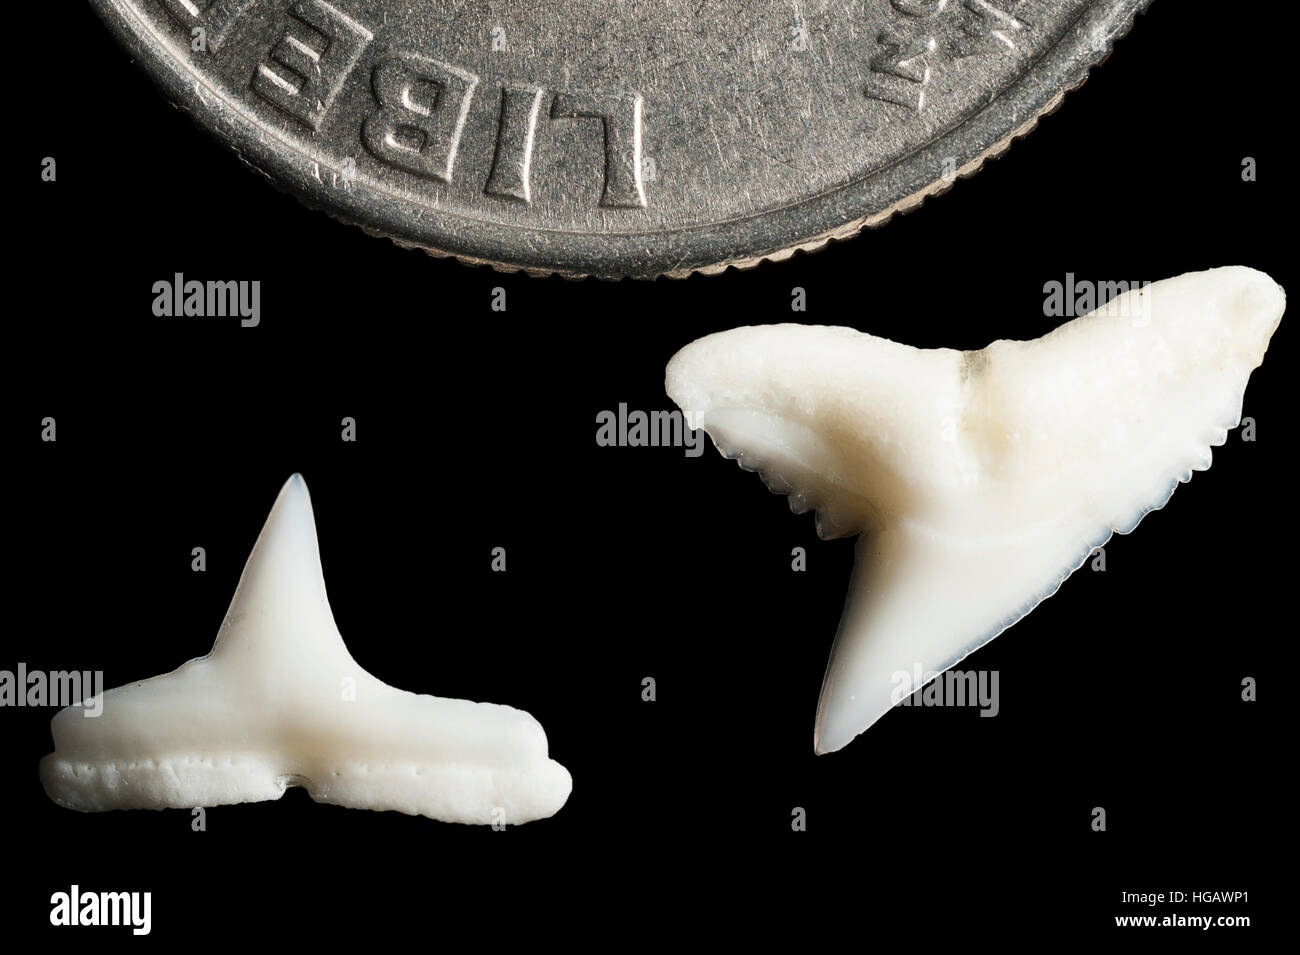 Supérieure et inférieure (dents) de nuit le requin, Carcharinus signatus, à côté de U.S. quart (25 cents) pour la comparaison de taille Banque D'Images